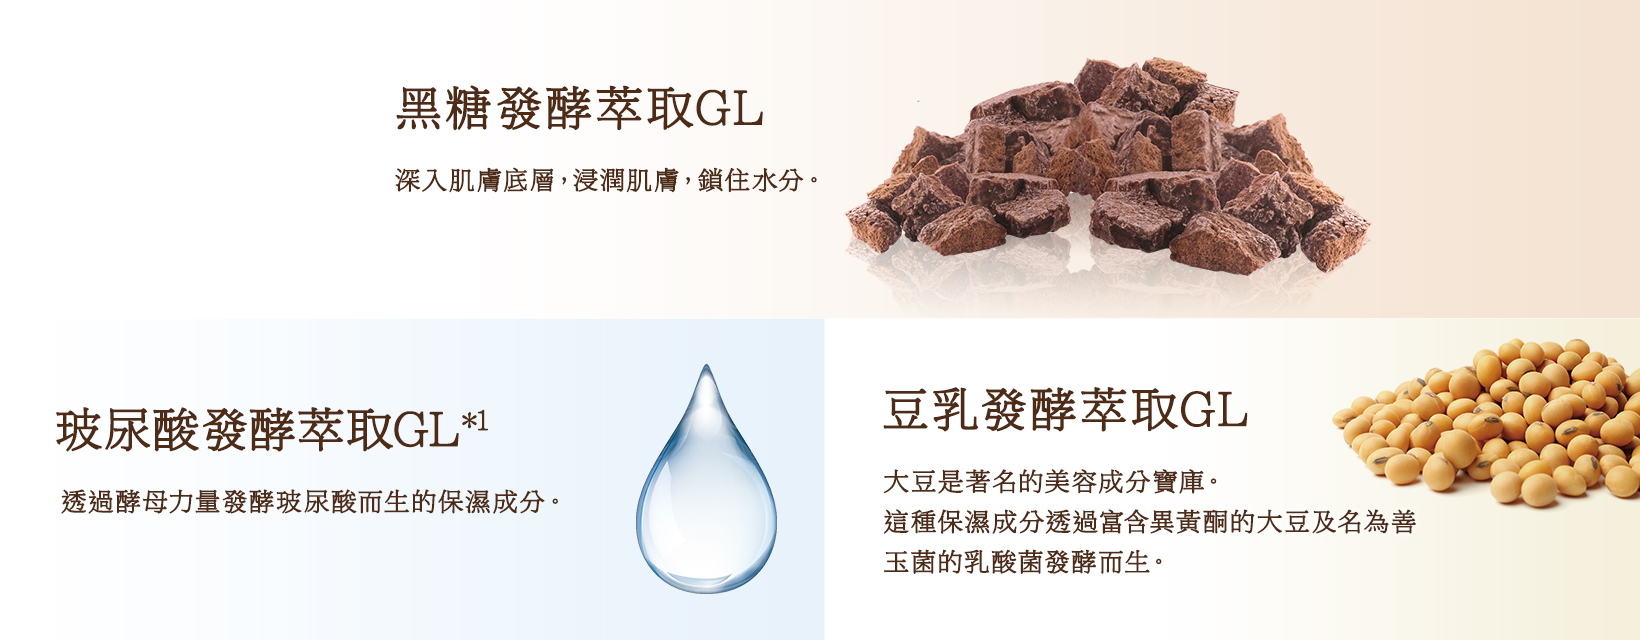 黒糖発酵エキスGL / ヒアルロン酸発酵エキスGL※1 / 豆乳発酵エキスGL